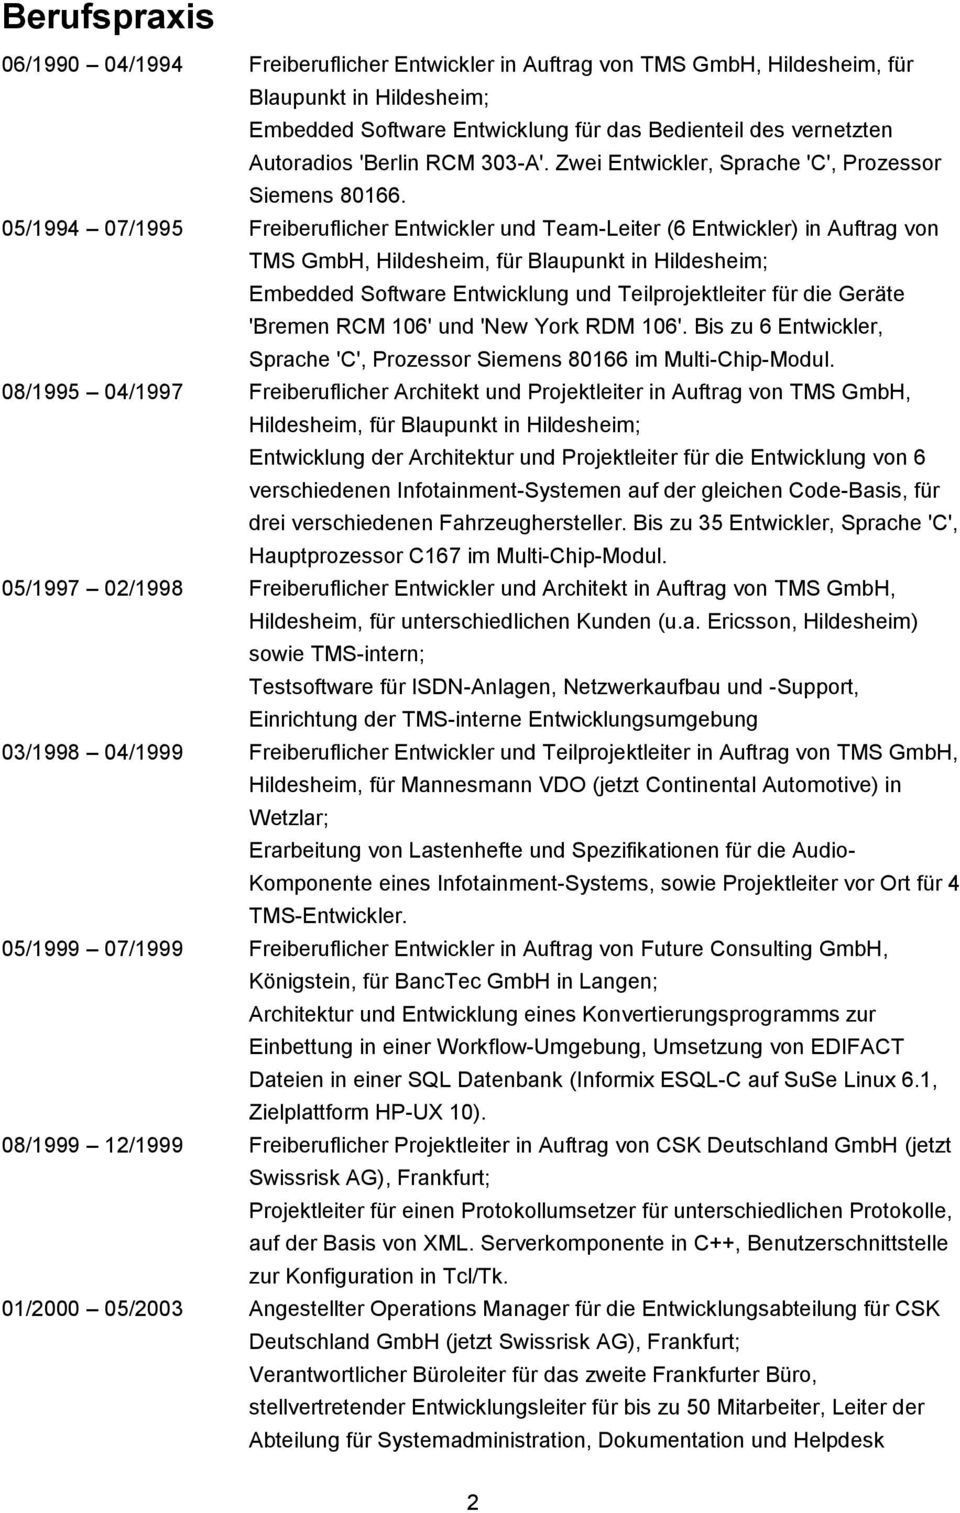 05/1994 07/1995 Freiberuflicher Entwickler und Team-Leiter (6 Entwickler) in Auftrag von TMS GmbH, Hildesheim, für Blaupunkt in Hildesheim; Embedded Software Entwicklung und Teilprojektleiter für die